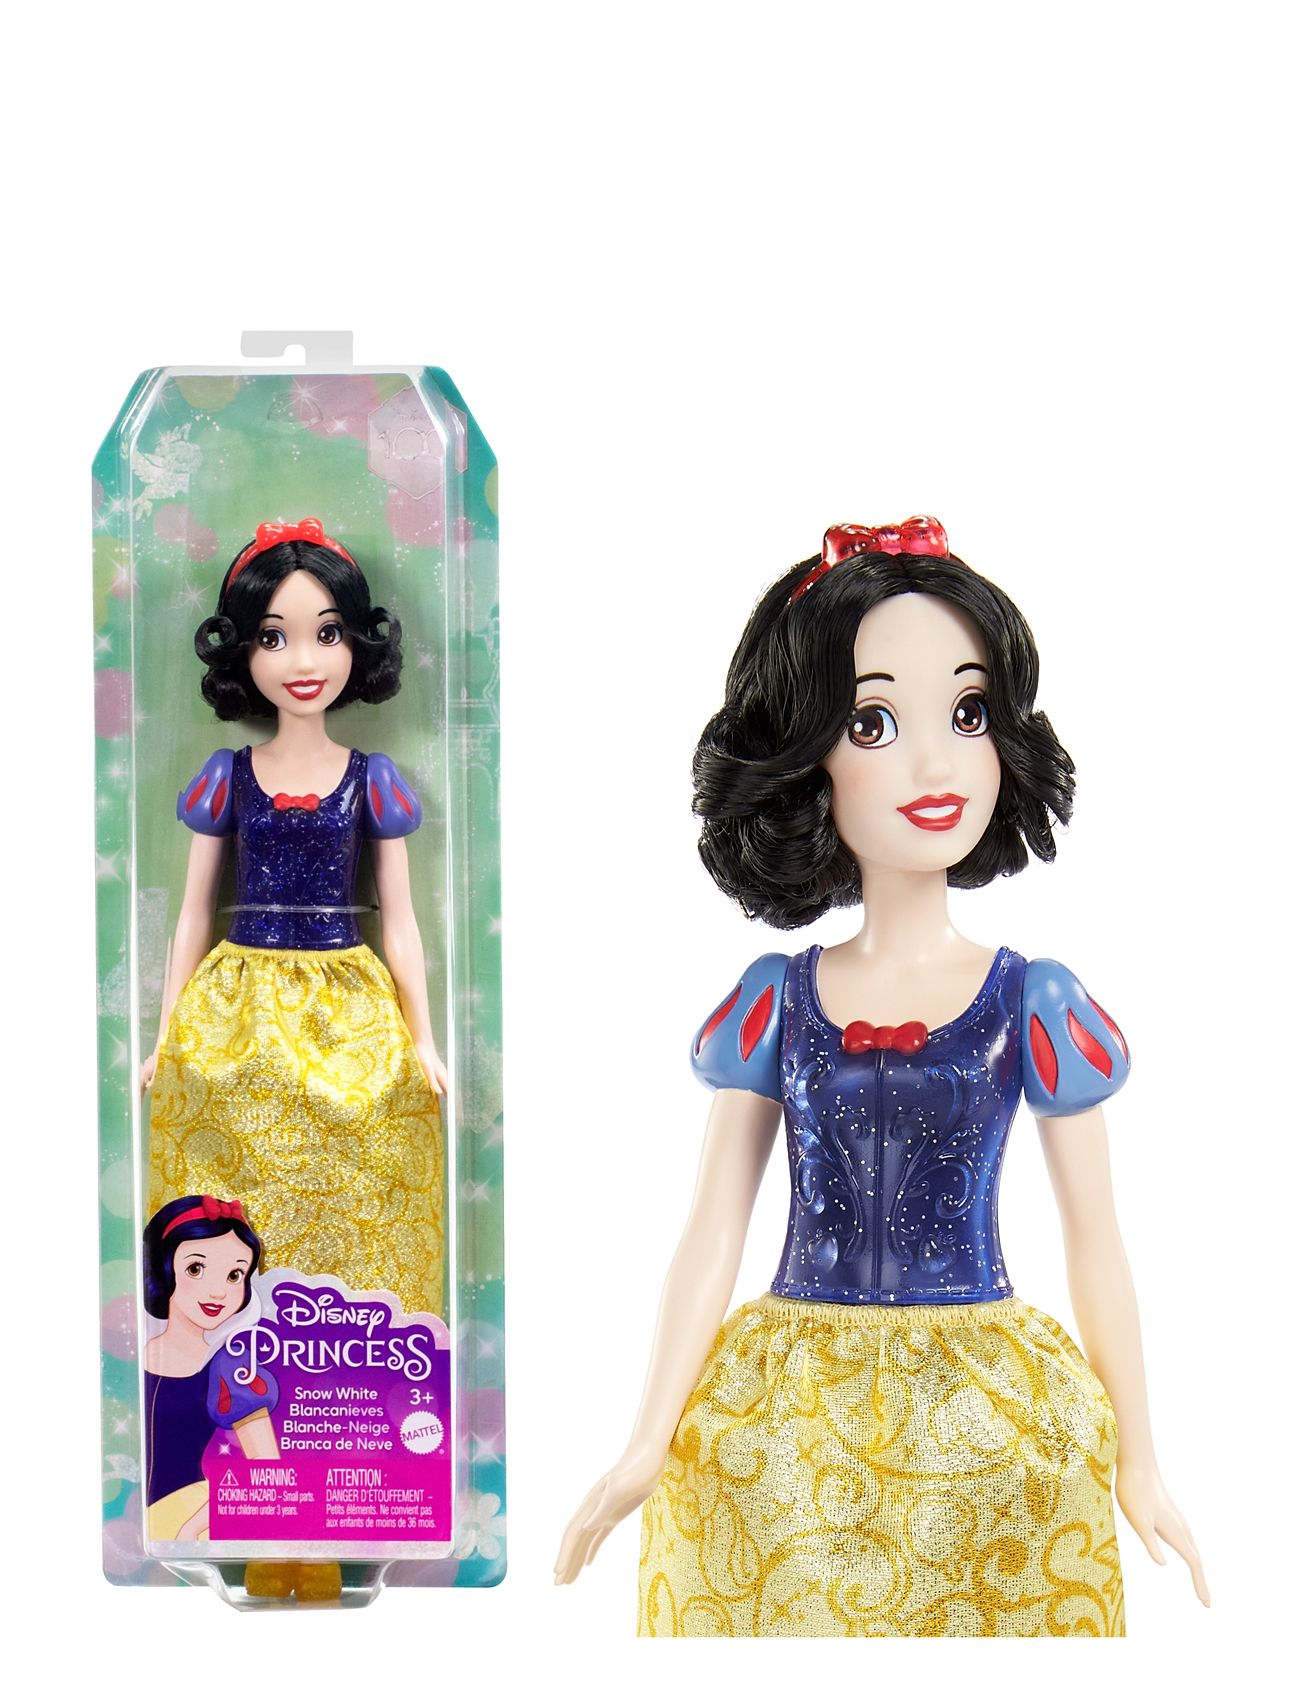 Disney Princess Snow White Doll Toys Dolls & Accessories Dolls Multi/patterned Disney Princess